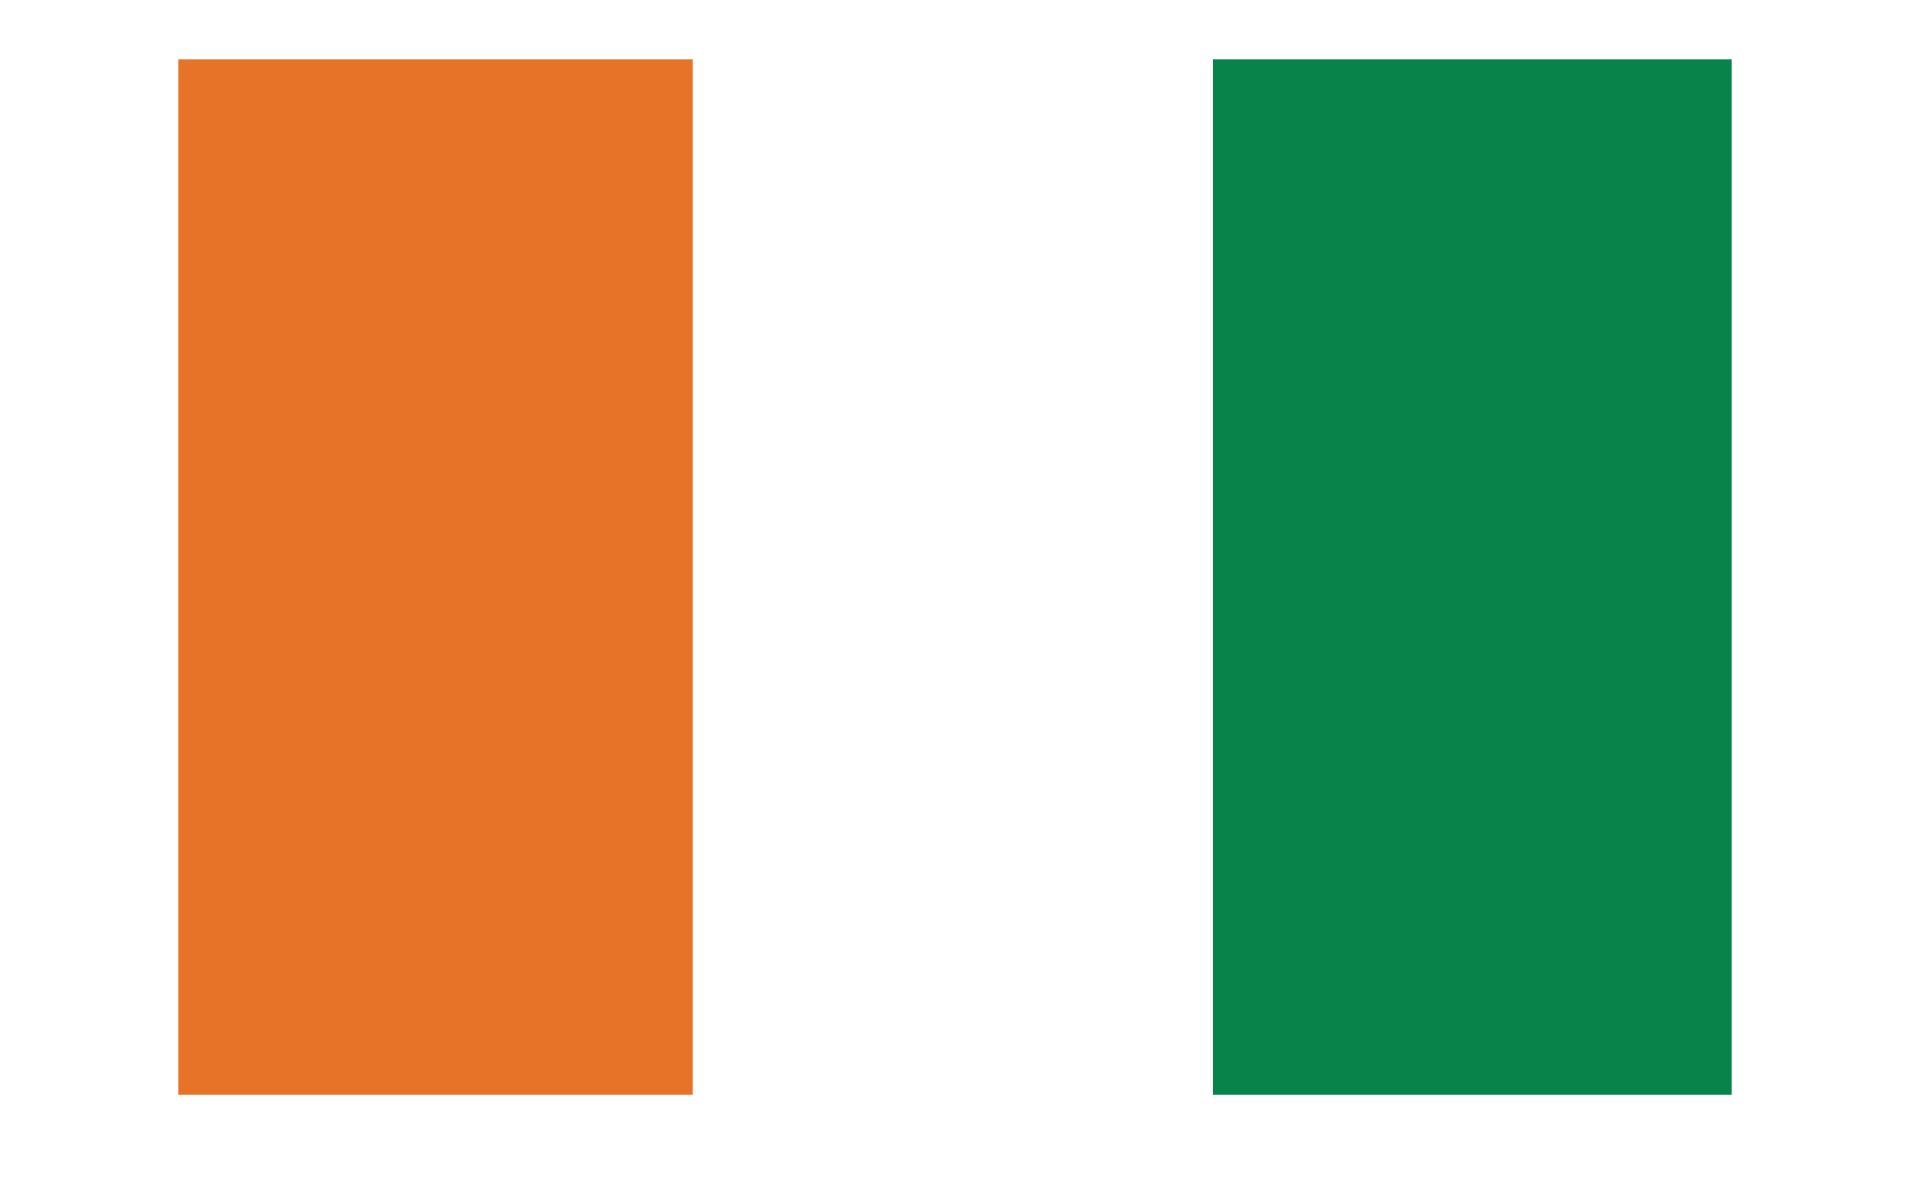 Ivory Coast Flag Png File Transparent Image